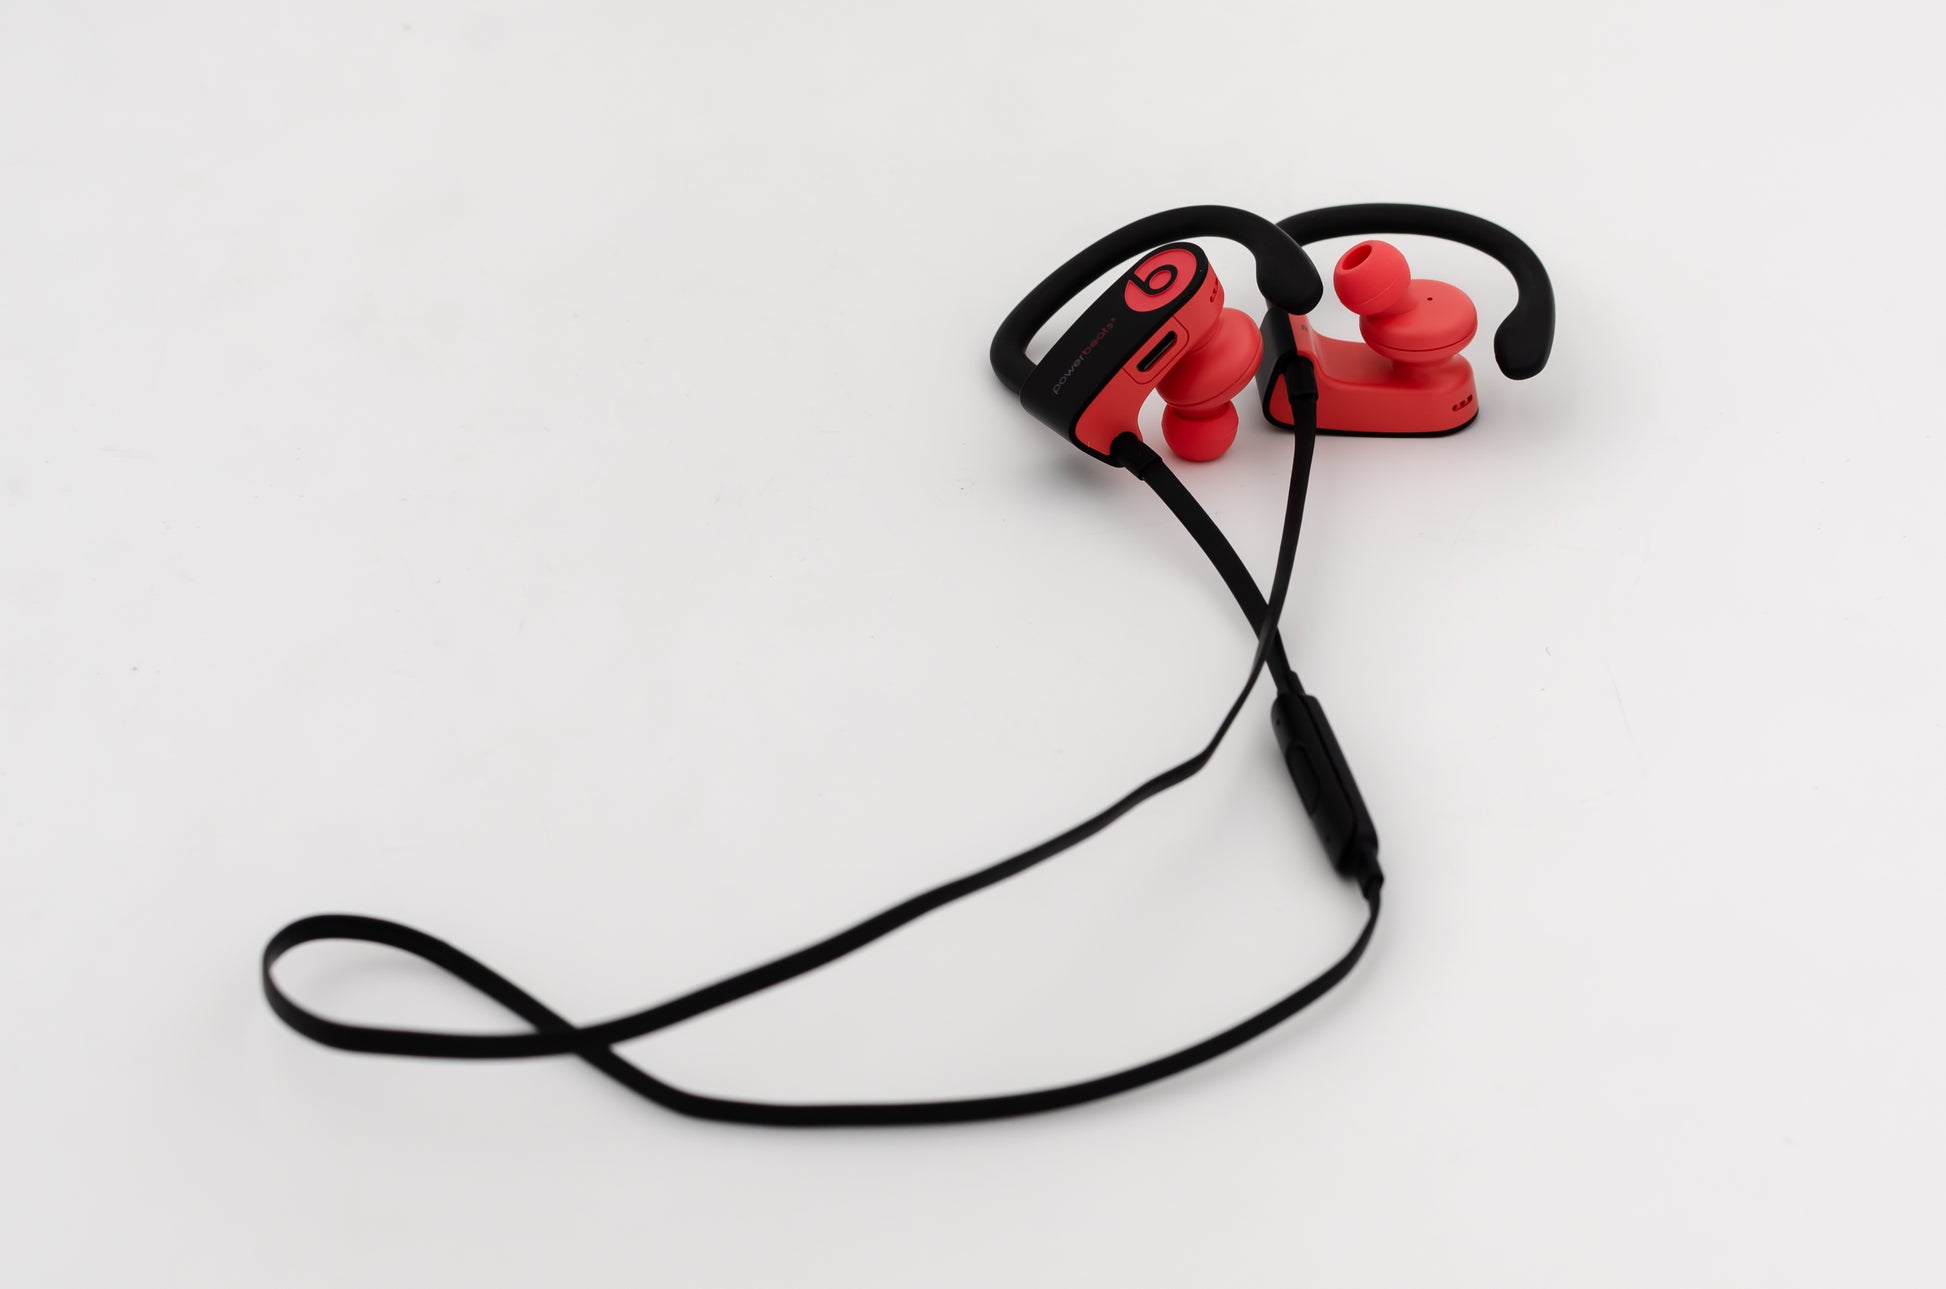 beats-powerbeats3-wireless-earphones-w/-apple-w1-chip-siren red-2